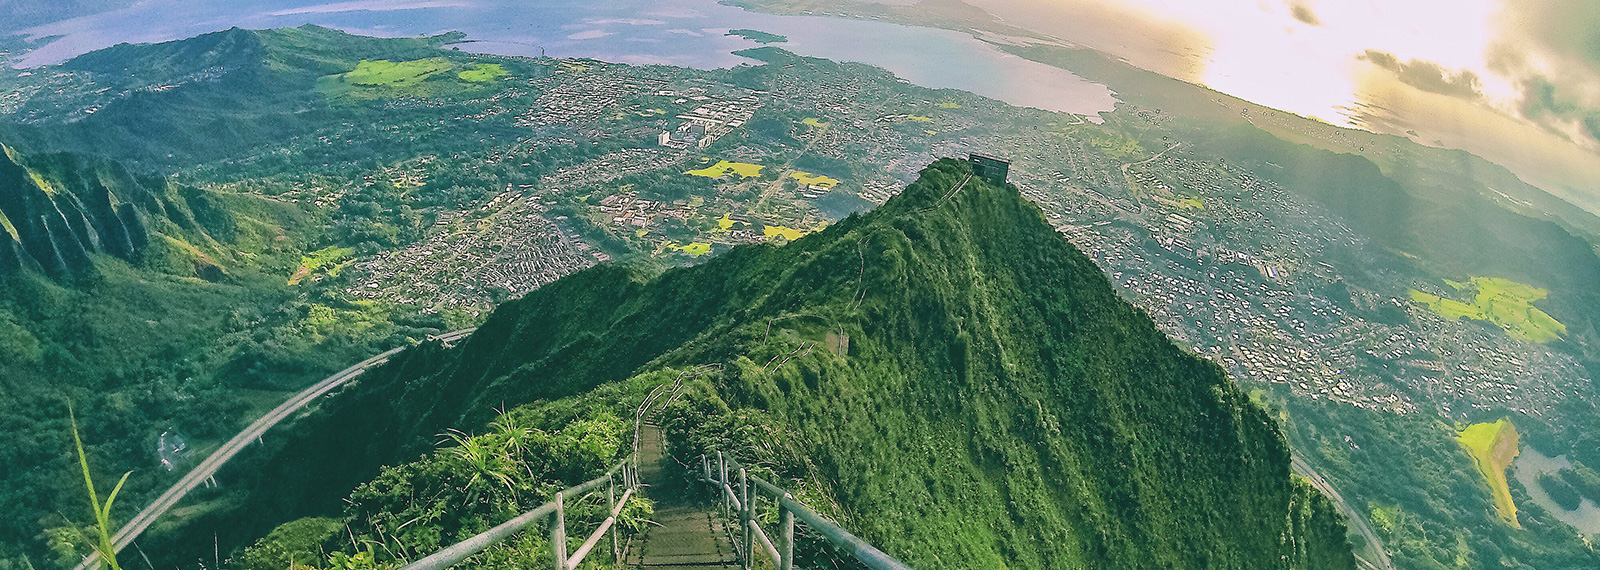 Výlety na Oahu, Havaj - Haiku Stairs